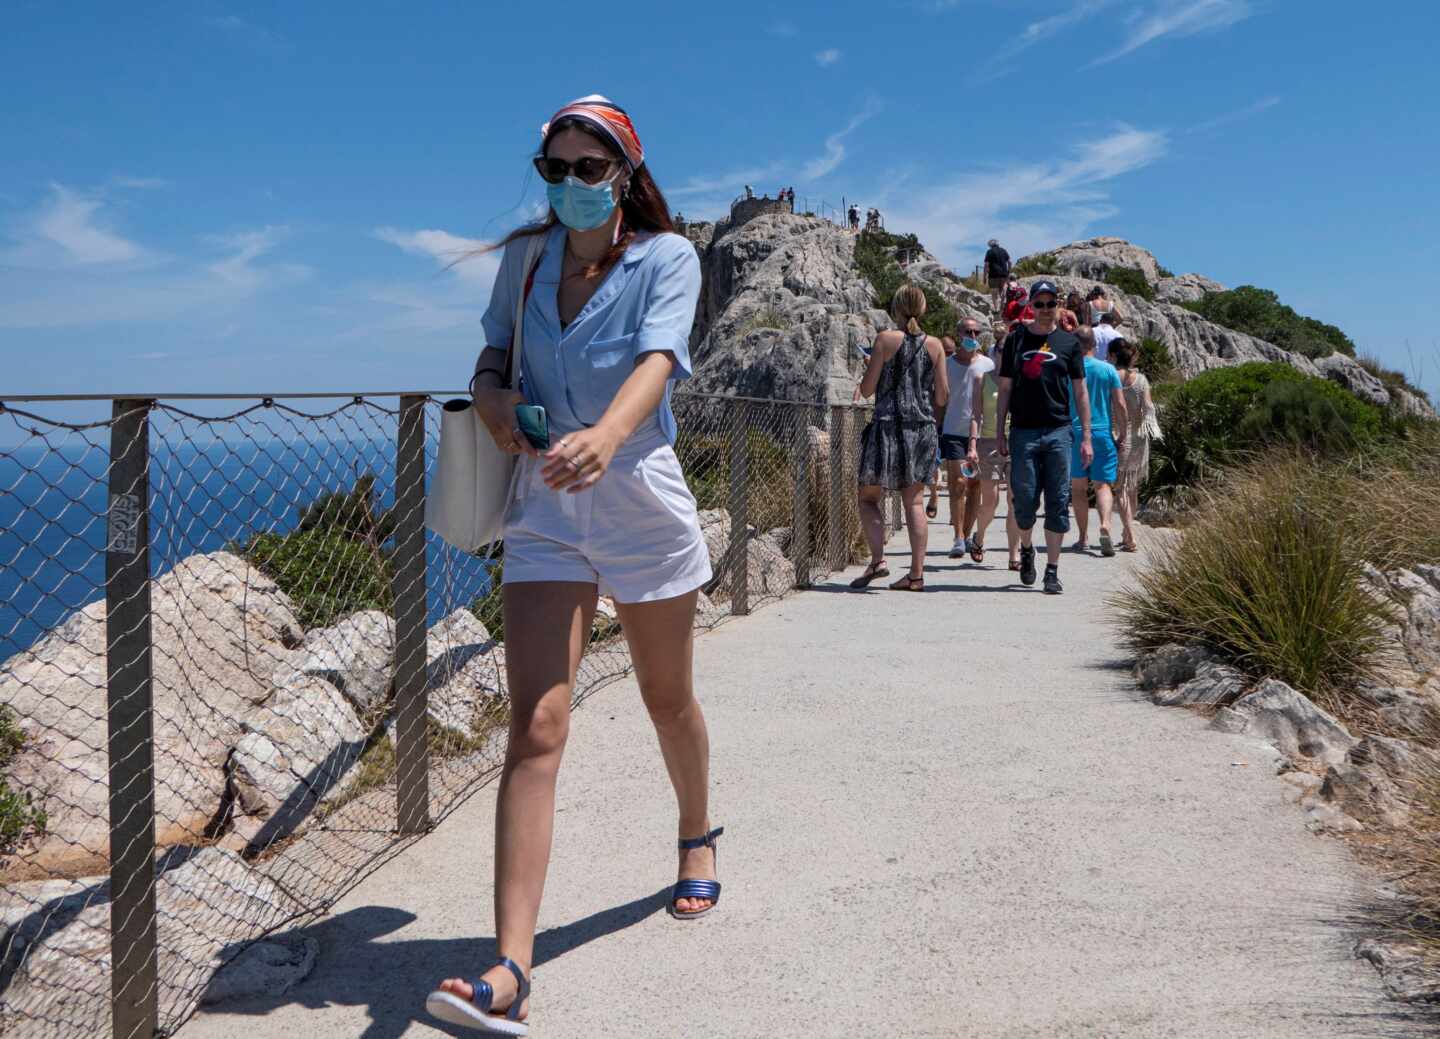 Alemania estudia desaconsejar viajar a Baleares por el aumento de contagios